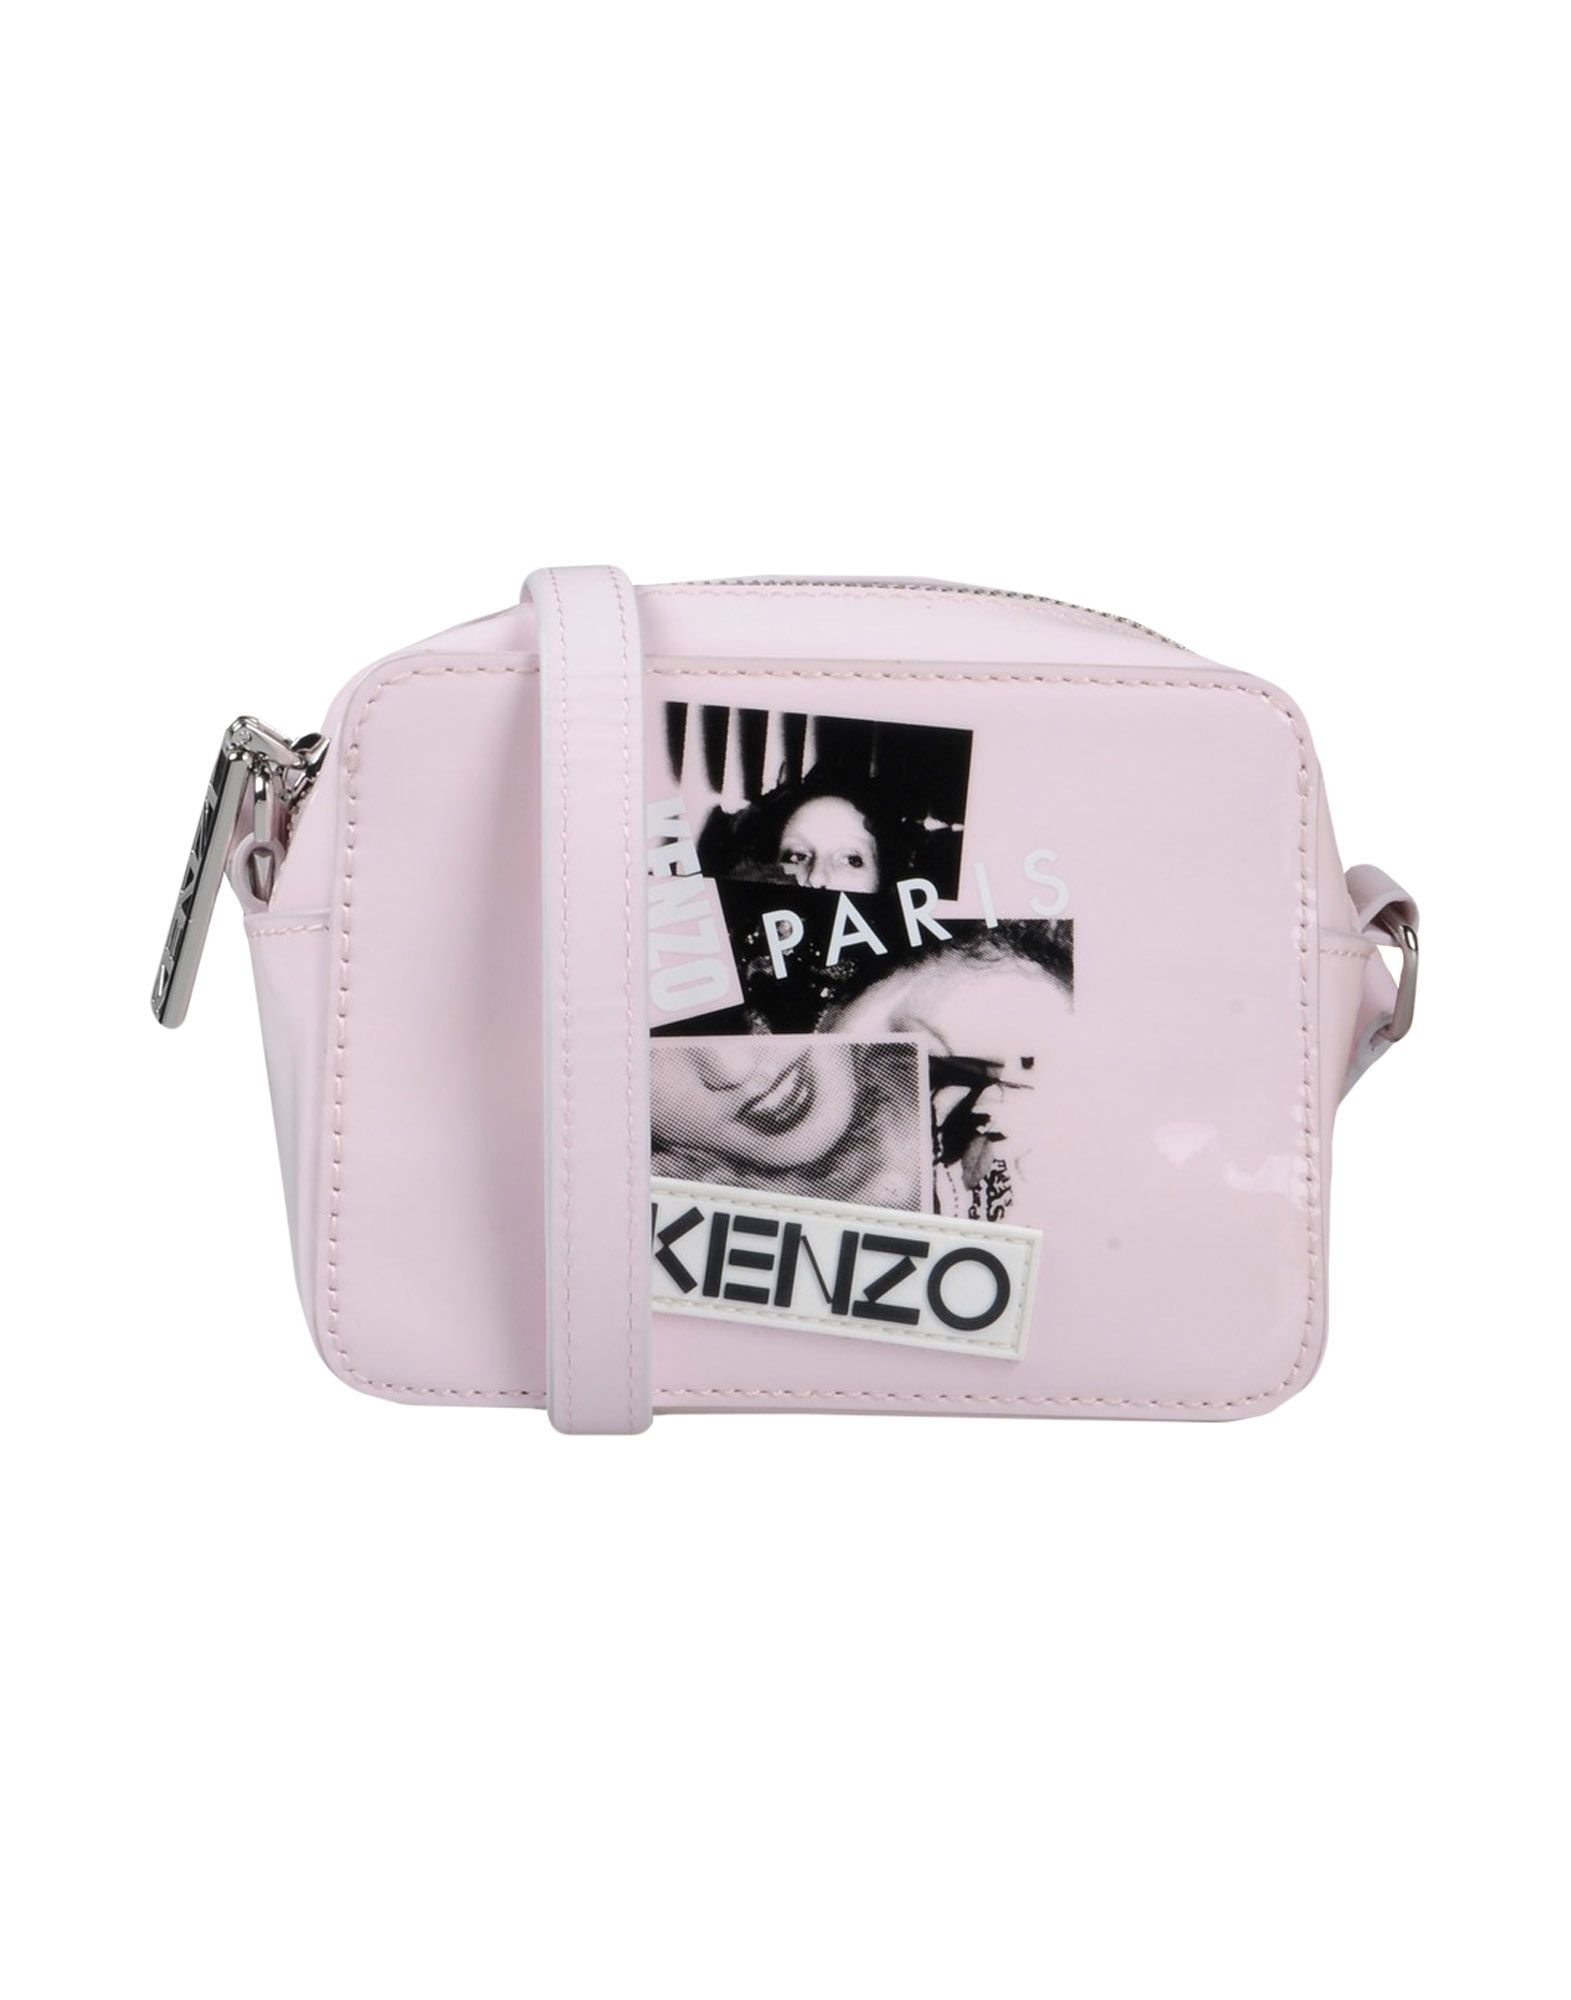 KENZO CROSS-BODY BAGS,45411157JA 1